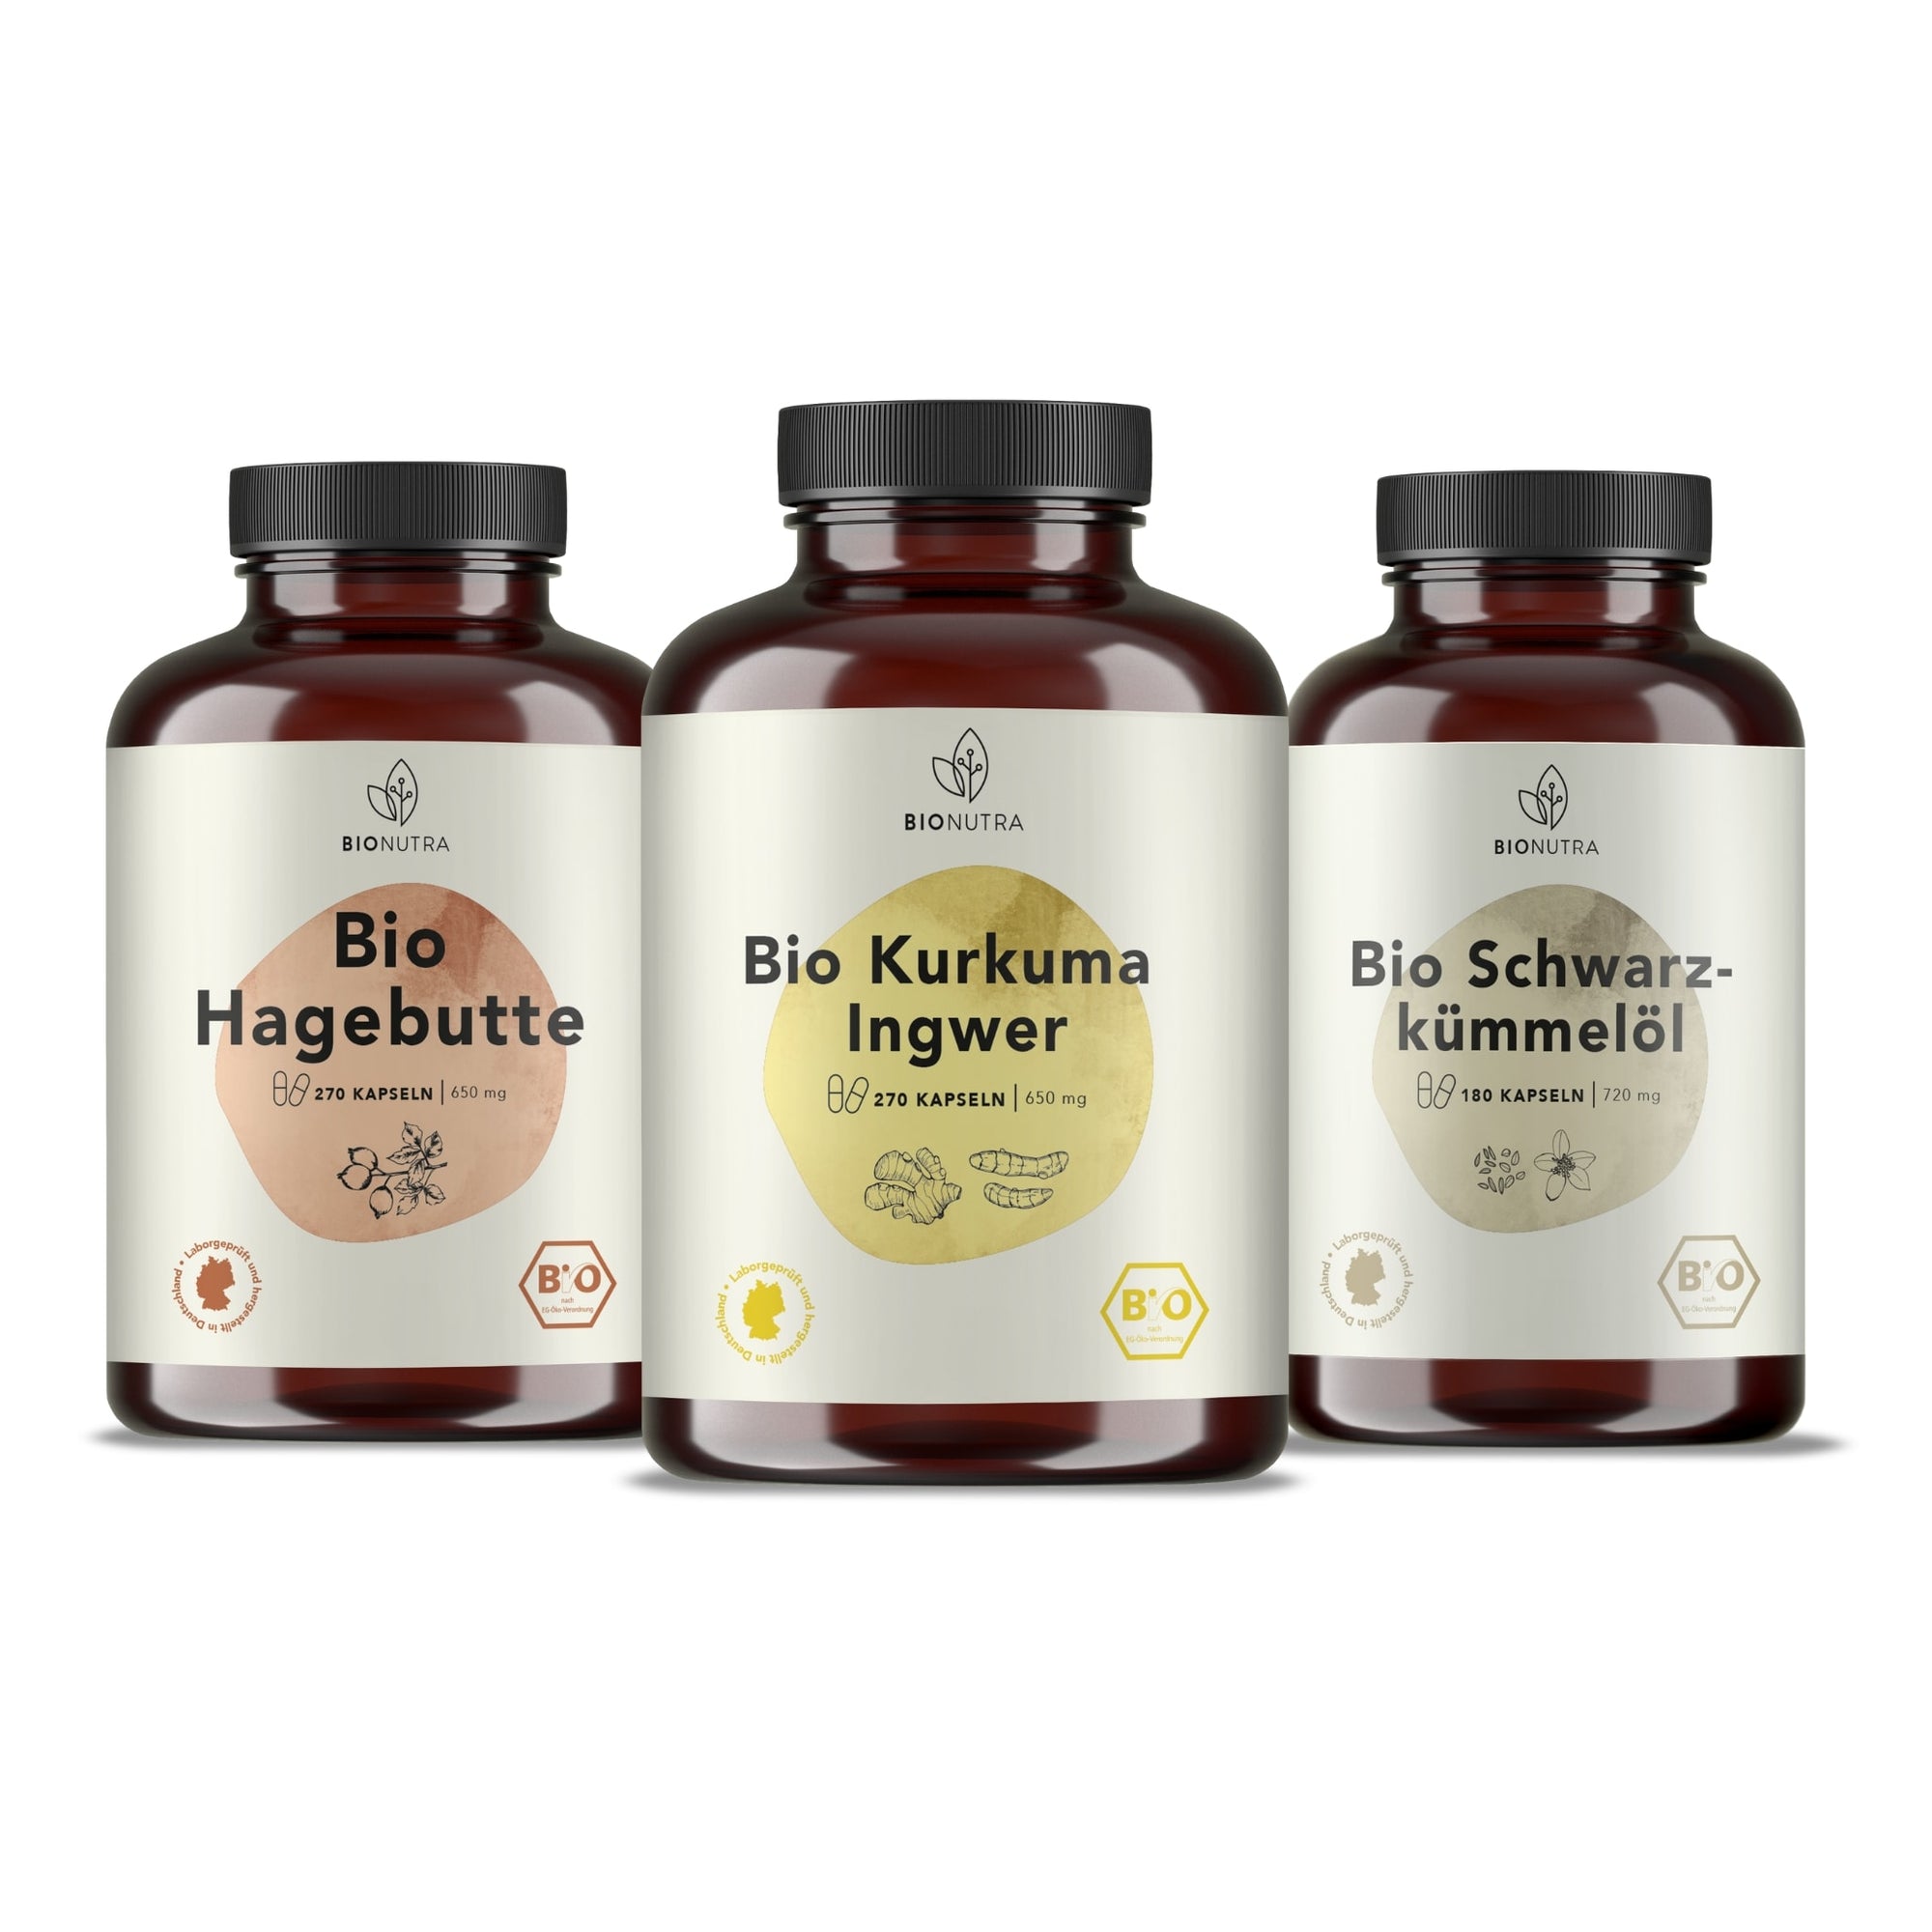 Bewegung Gelenke Set enthält Bio Kurkuma Ingwer Kapseln, Bio Hagebutte Kapseln, Bio Schwarzkümmelöl Kapseln